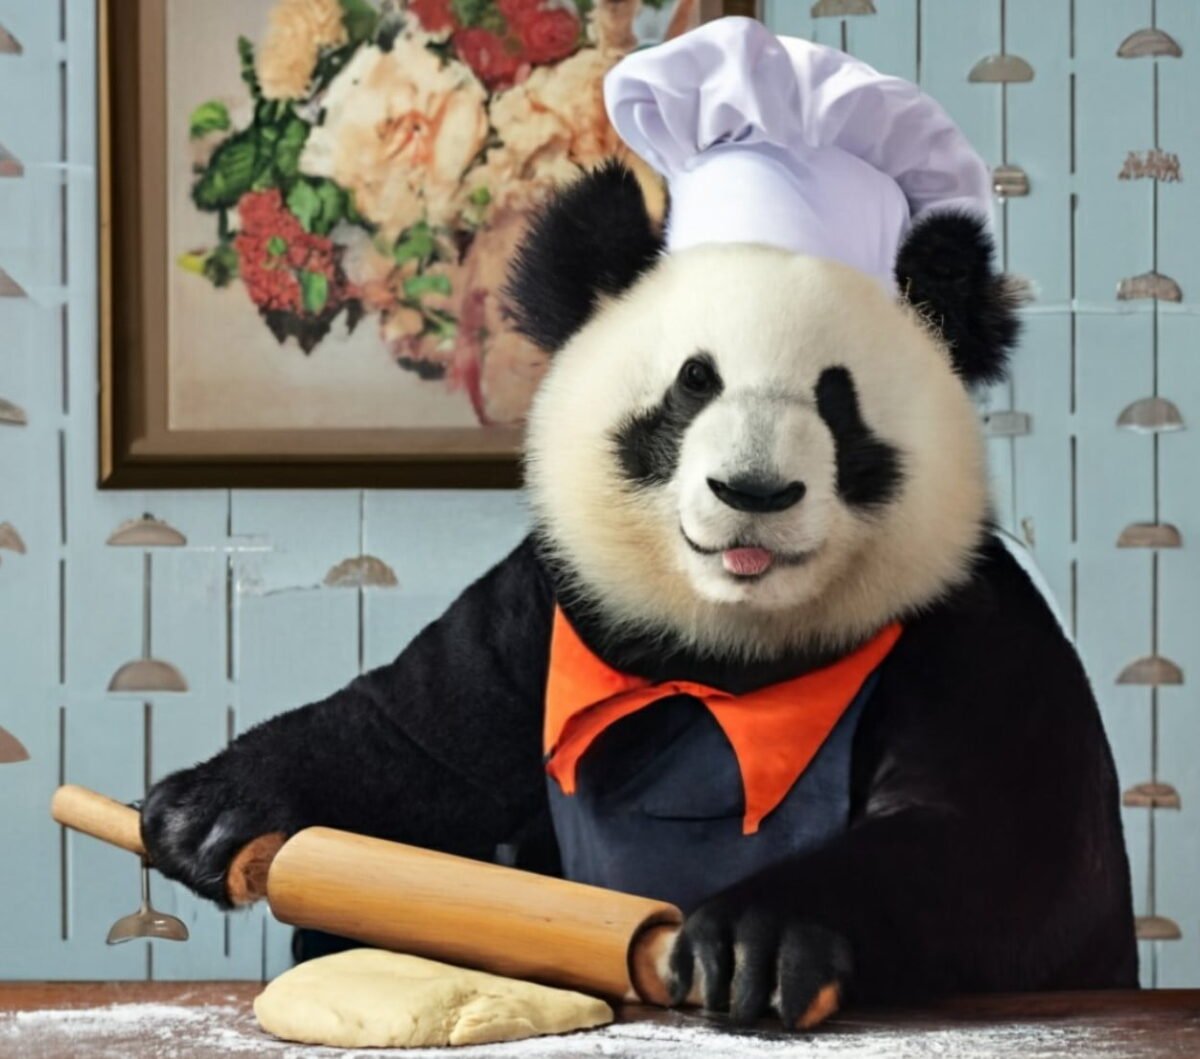 Ein von einer KI gezeichneter Panda wälzt mit einem Nudelholz Teig. Er trägt einen Kochhut.